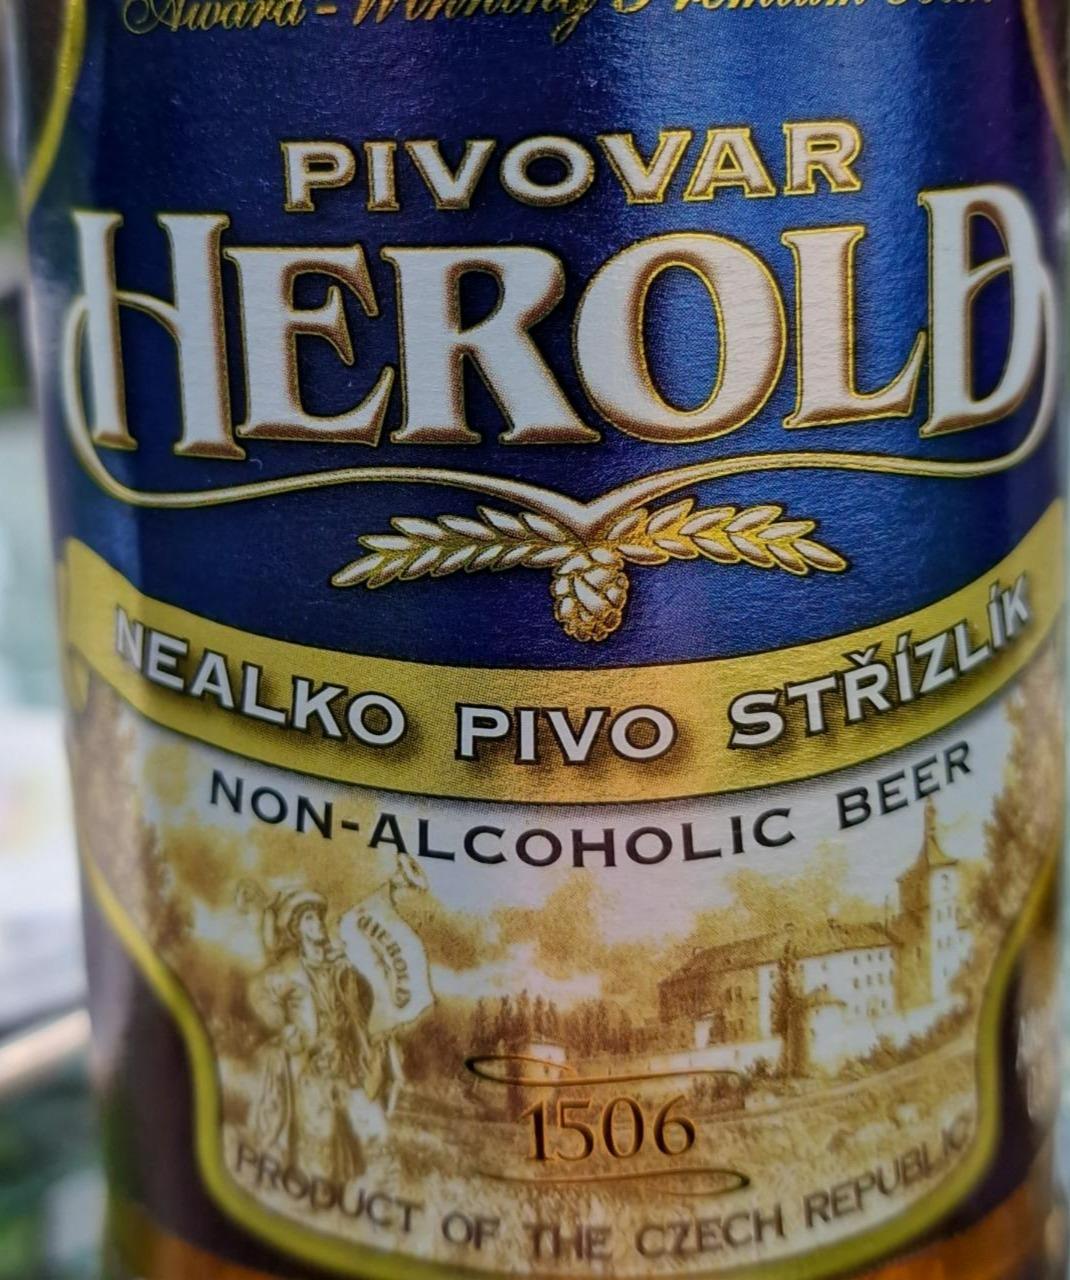 Fotografie - Nealko pivo Střízlík Pivovar Herold